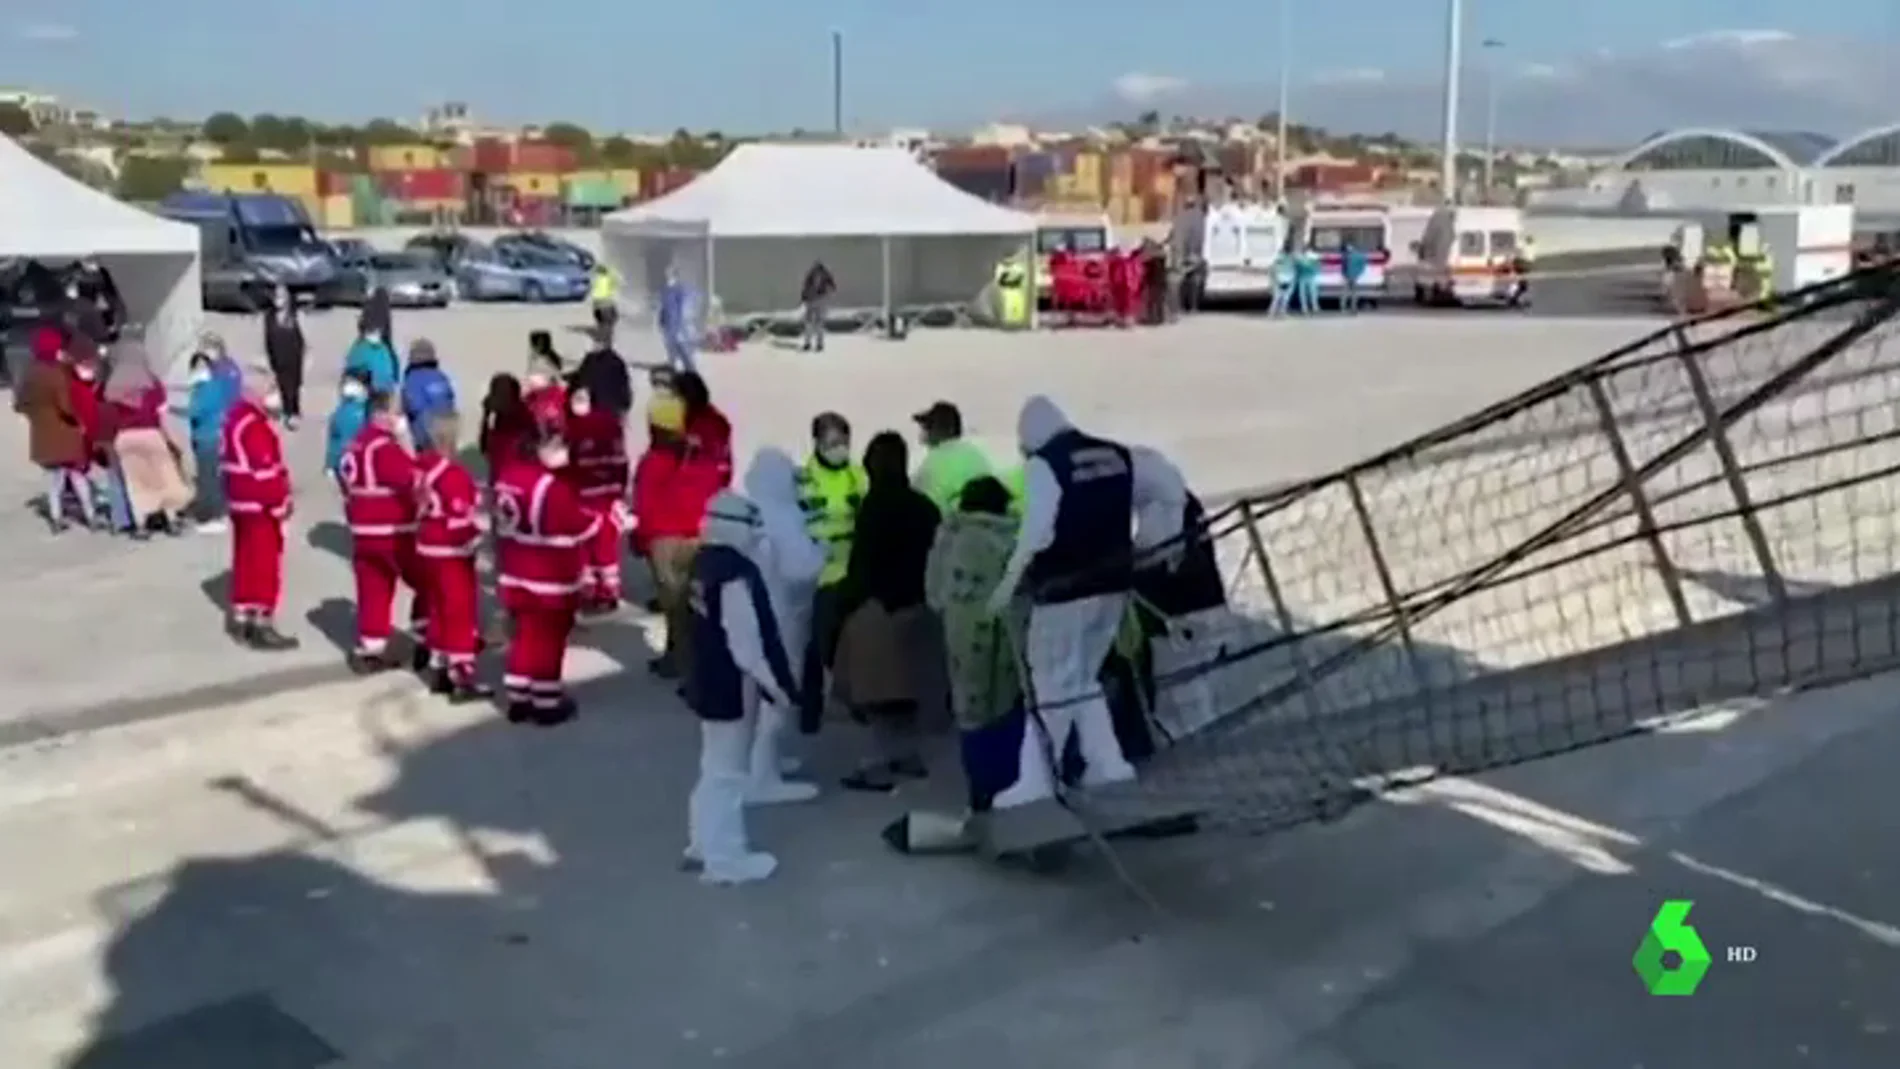 El Open Arms desembarca a 363 migrantes rescatados en el Mediterráneo en Pozzalo, Sicilia